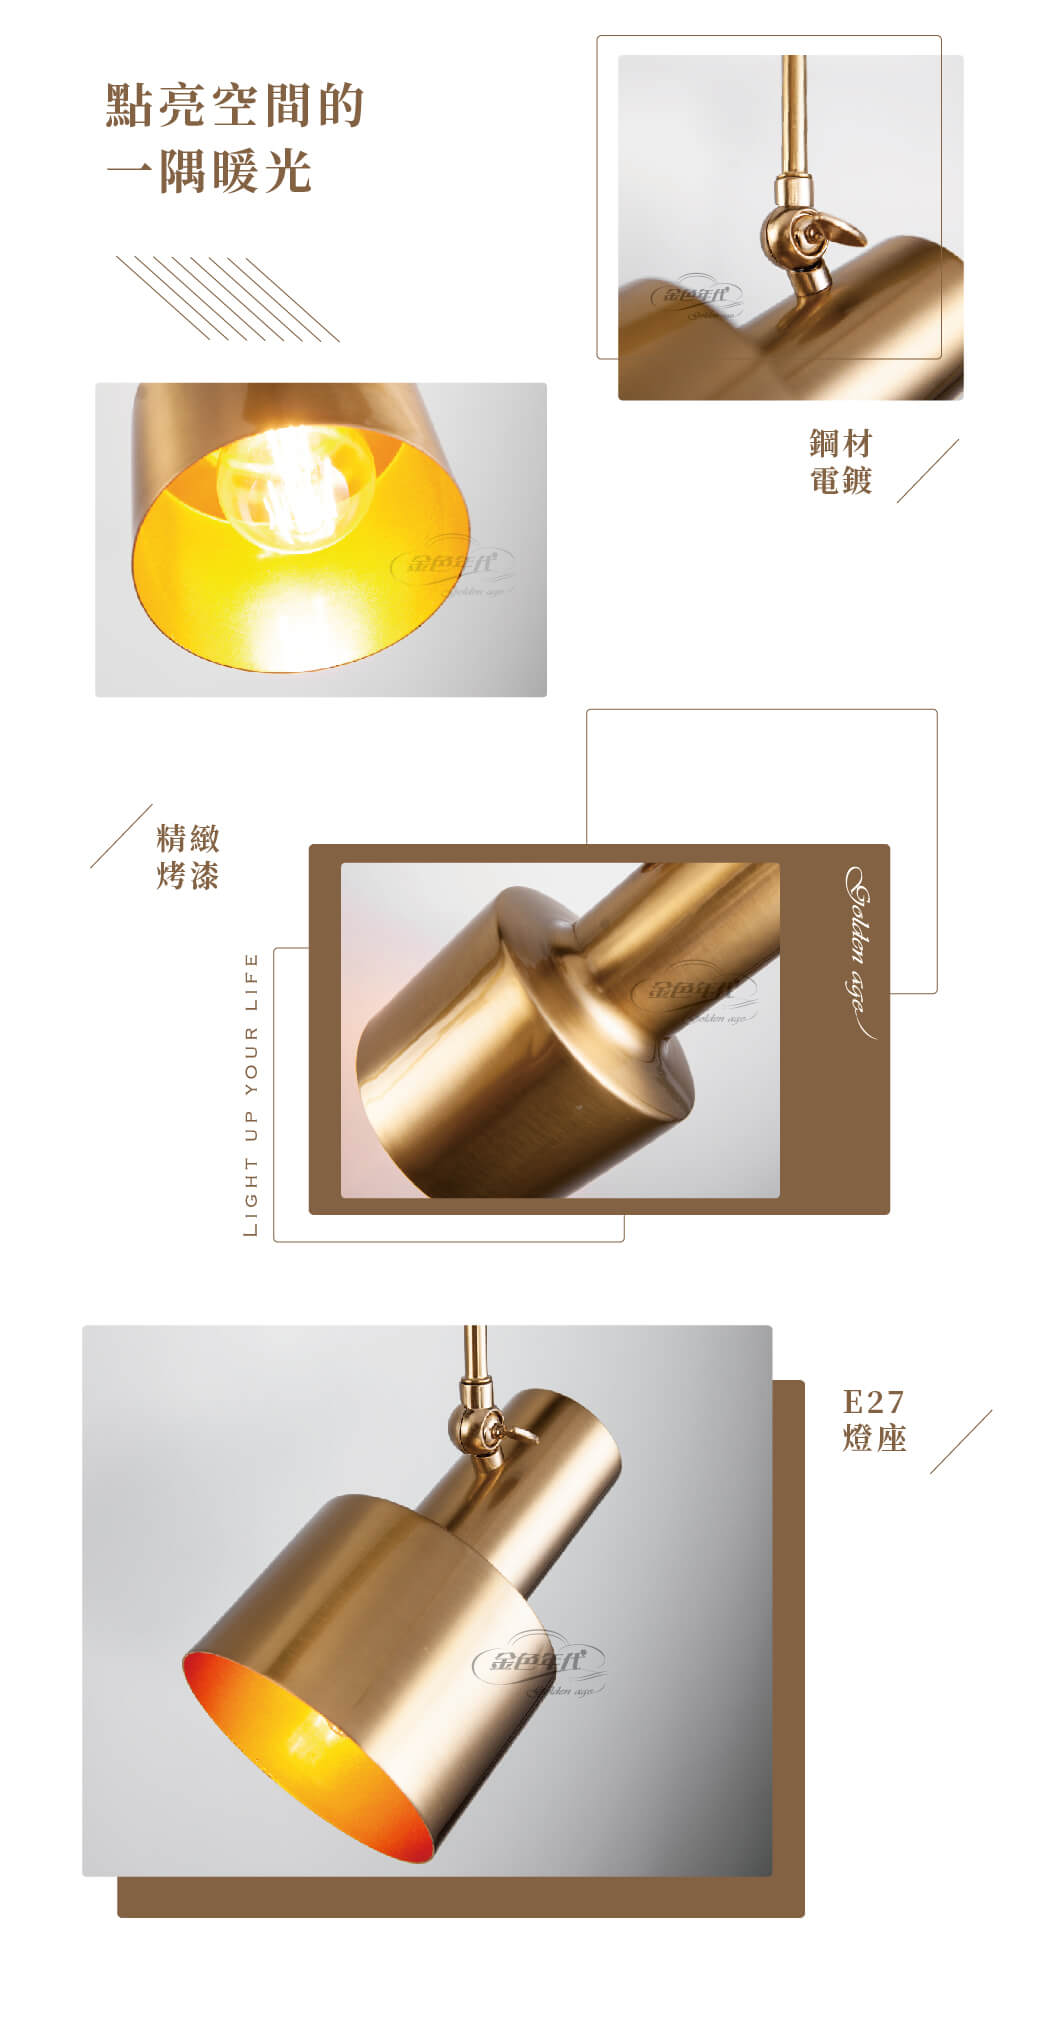 GA10官網圖文-金古銅造型軌道燈02